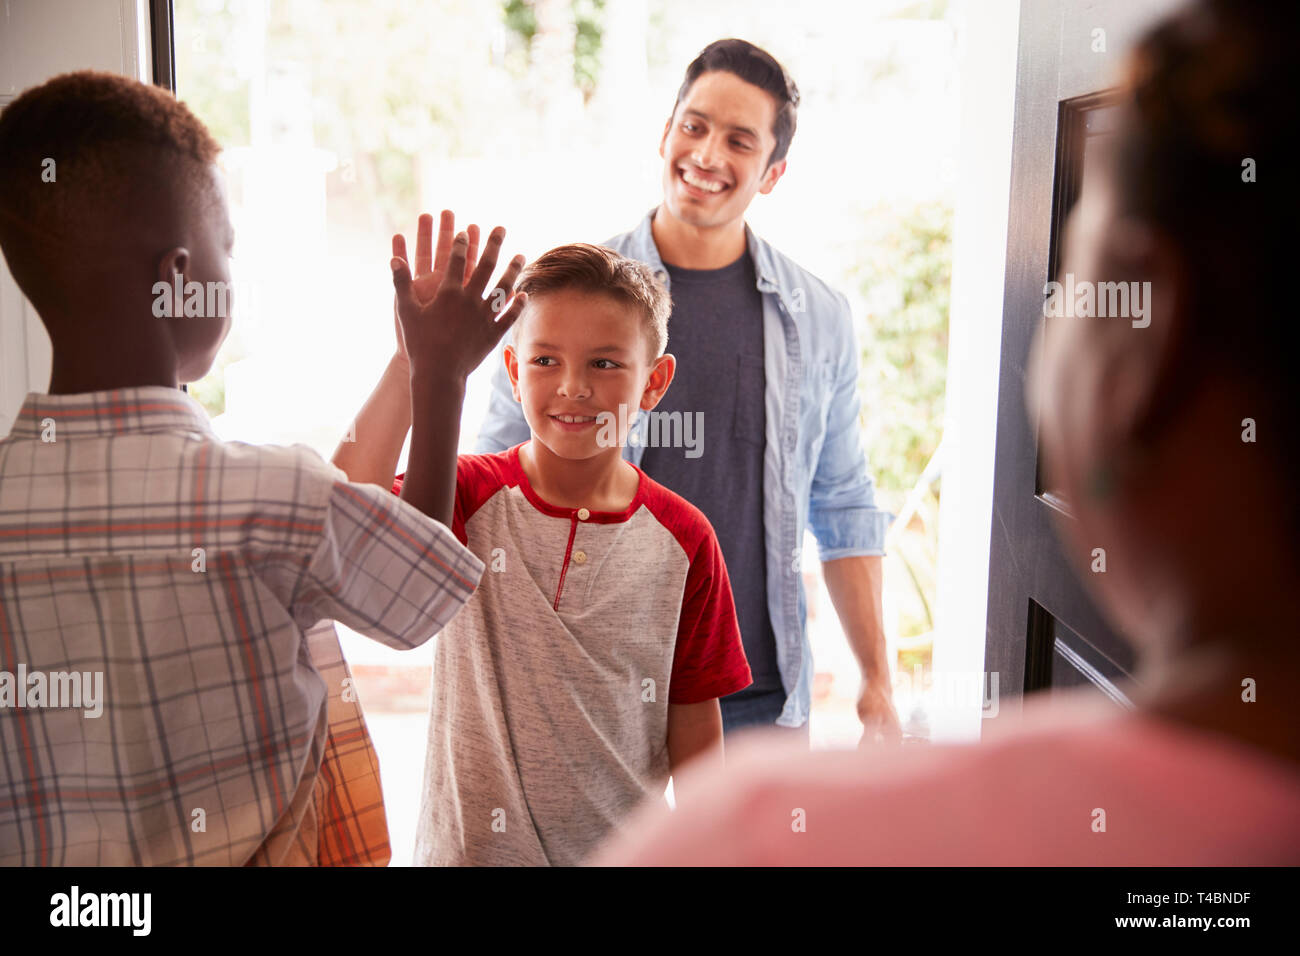 Die beiden Pre-teen Boys High Five in die offene Tür, wie Vati läßt seinen Sohn im Haus seiner Freunde Stockfoto